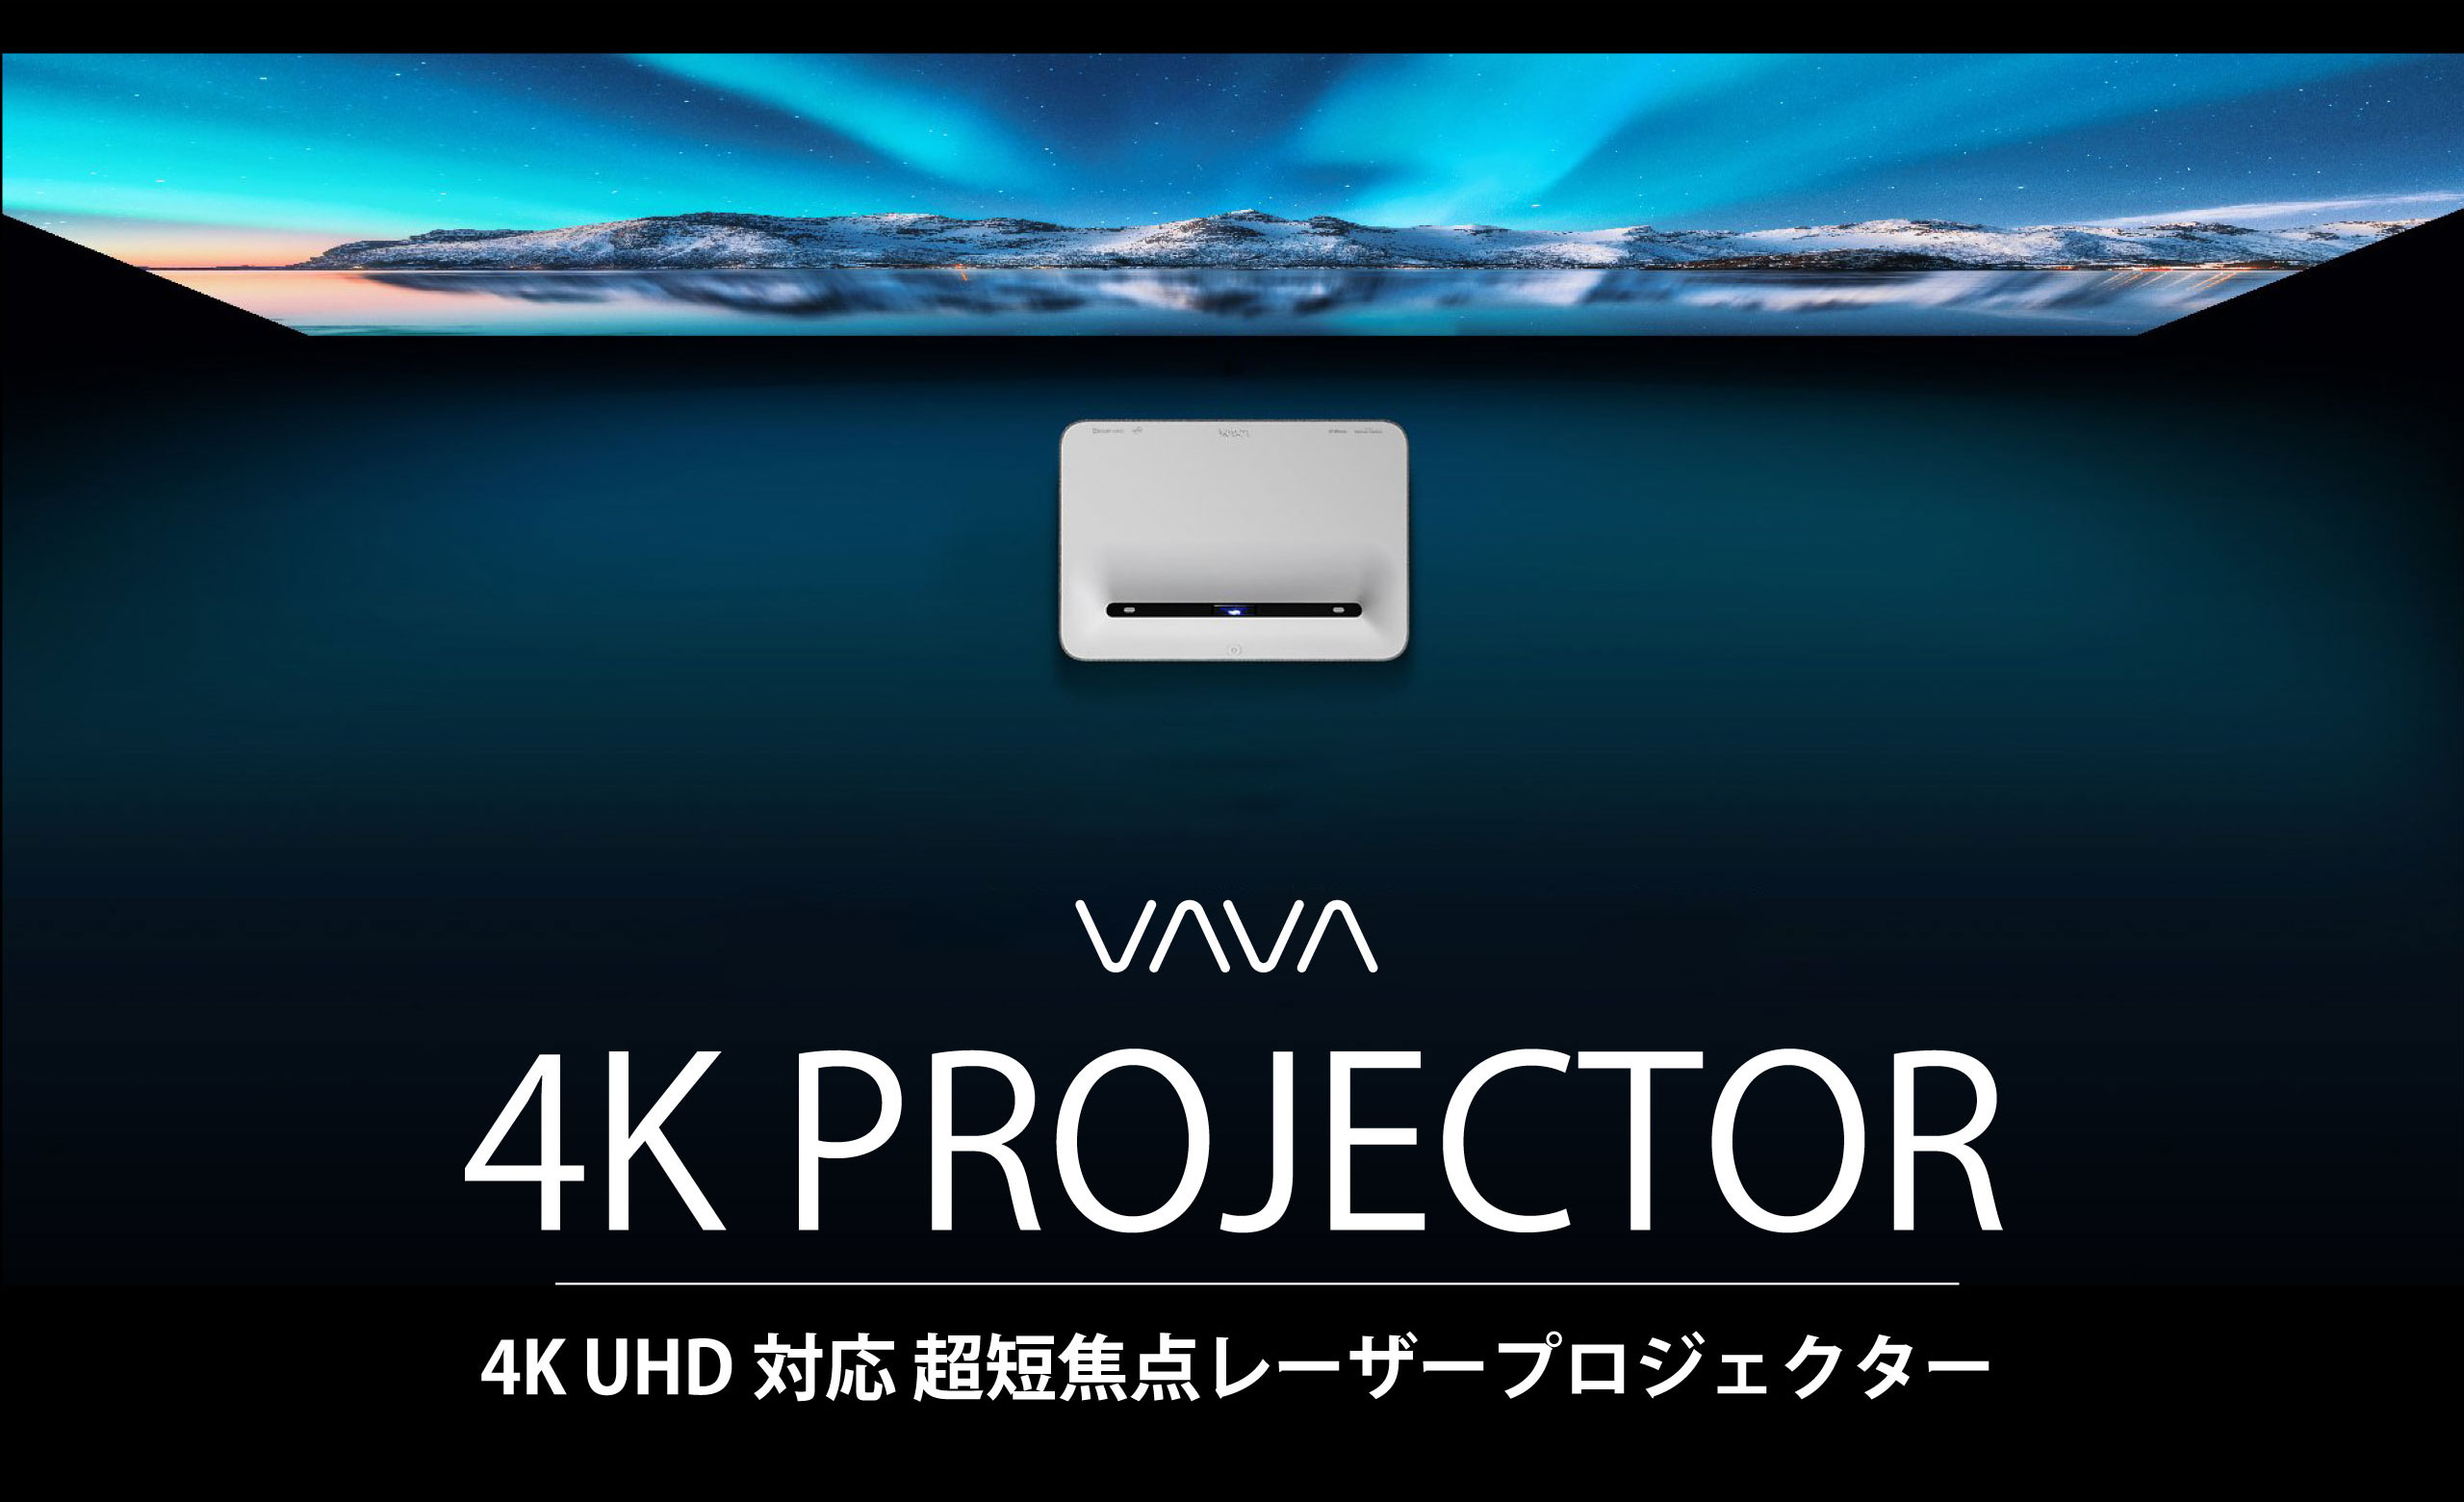 4K uhd 短焦点 レーザープロジェクター VAVA VA-LT002